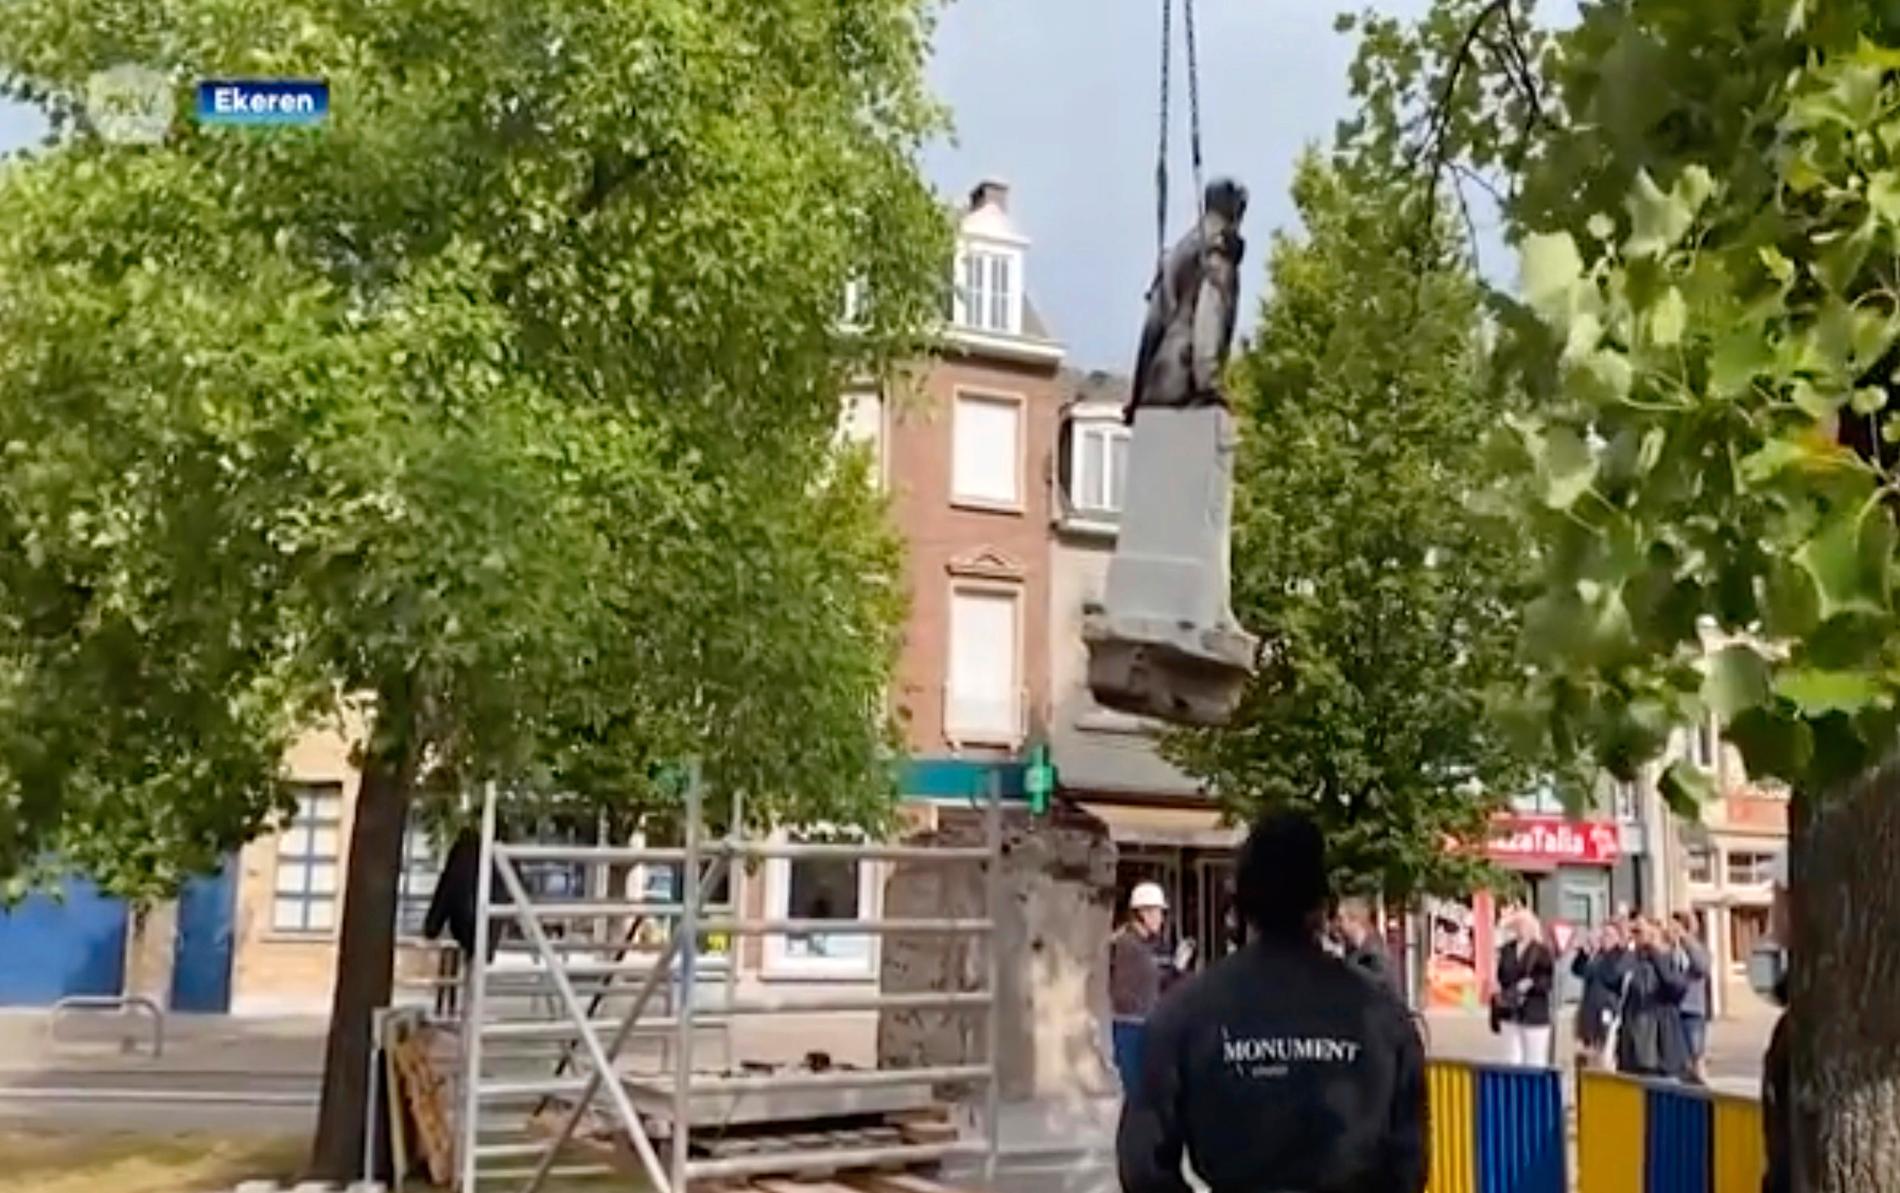 En staty av Leopold II demonteras i Antwerpen.